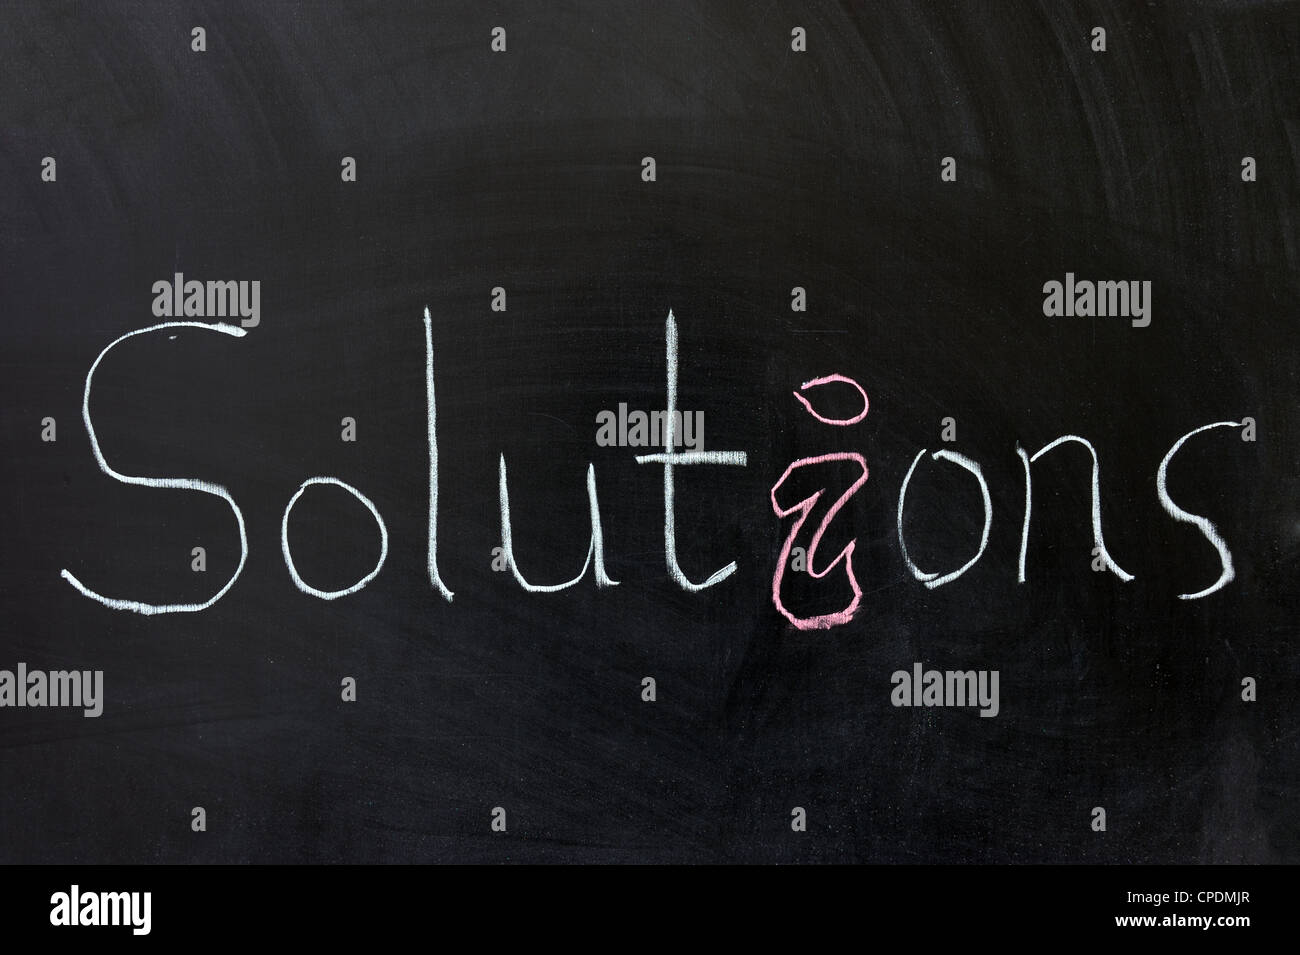 Dessin à la craie - Solutions mot written on chalkboard Banque D'Images